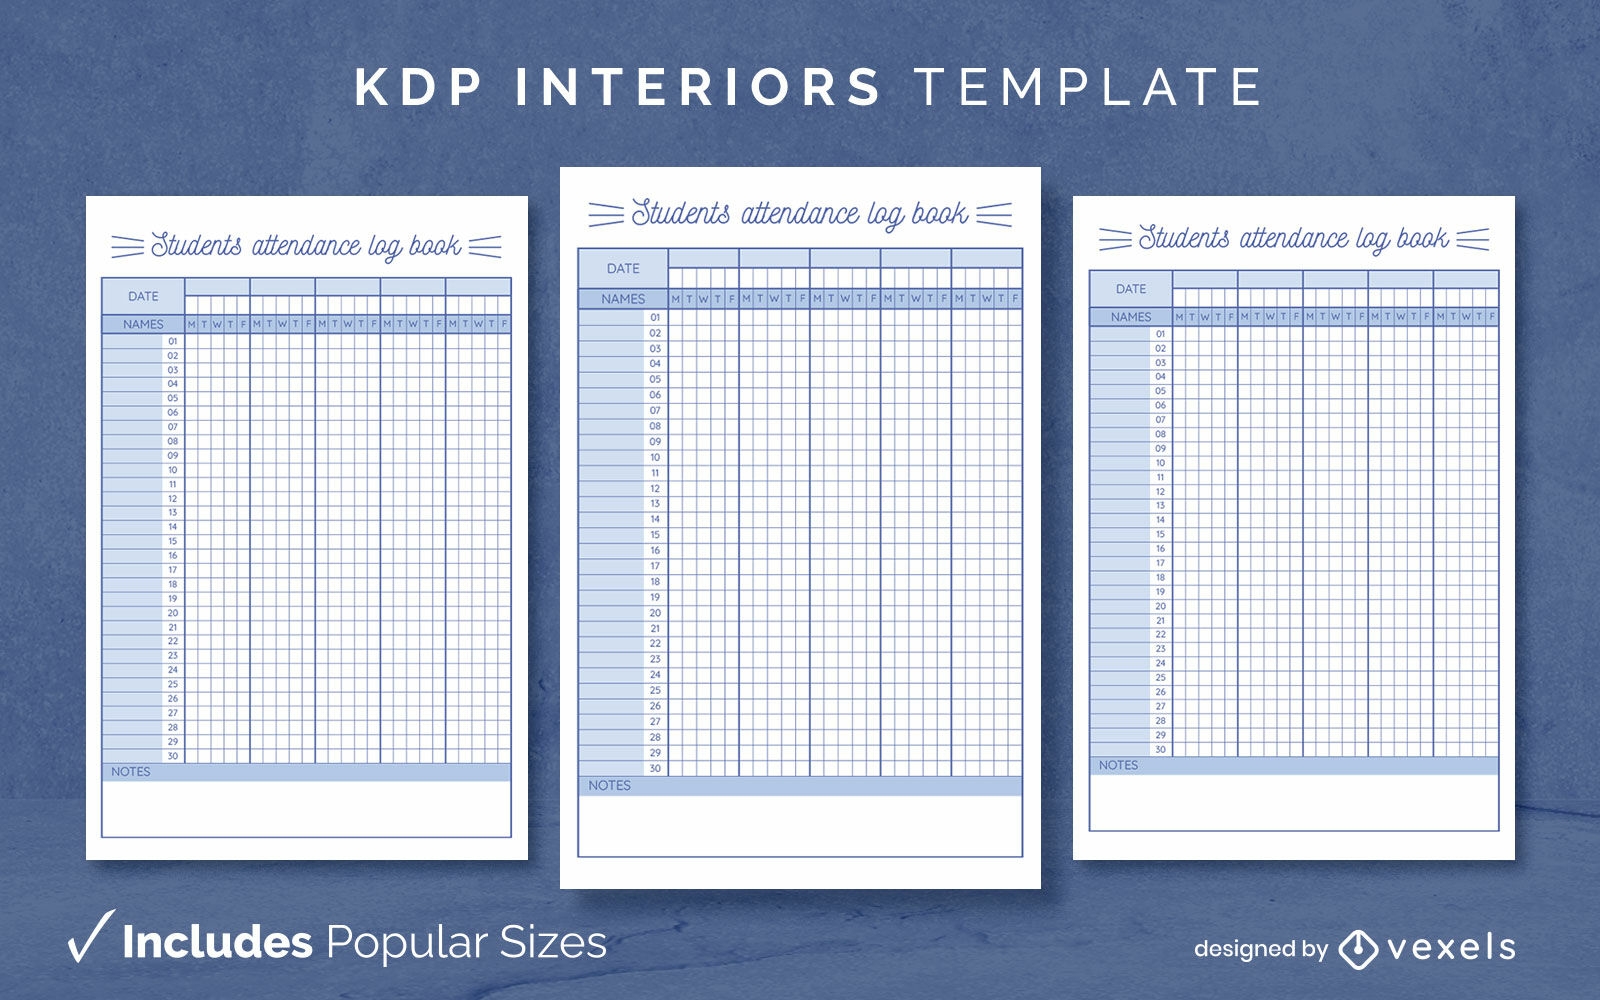 Student attendance journal design template KDP